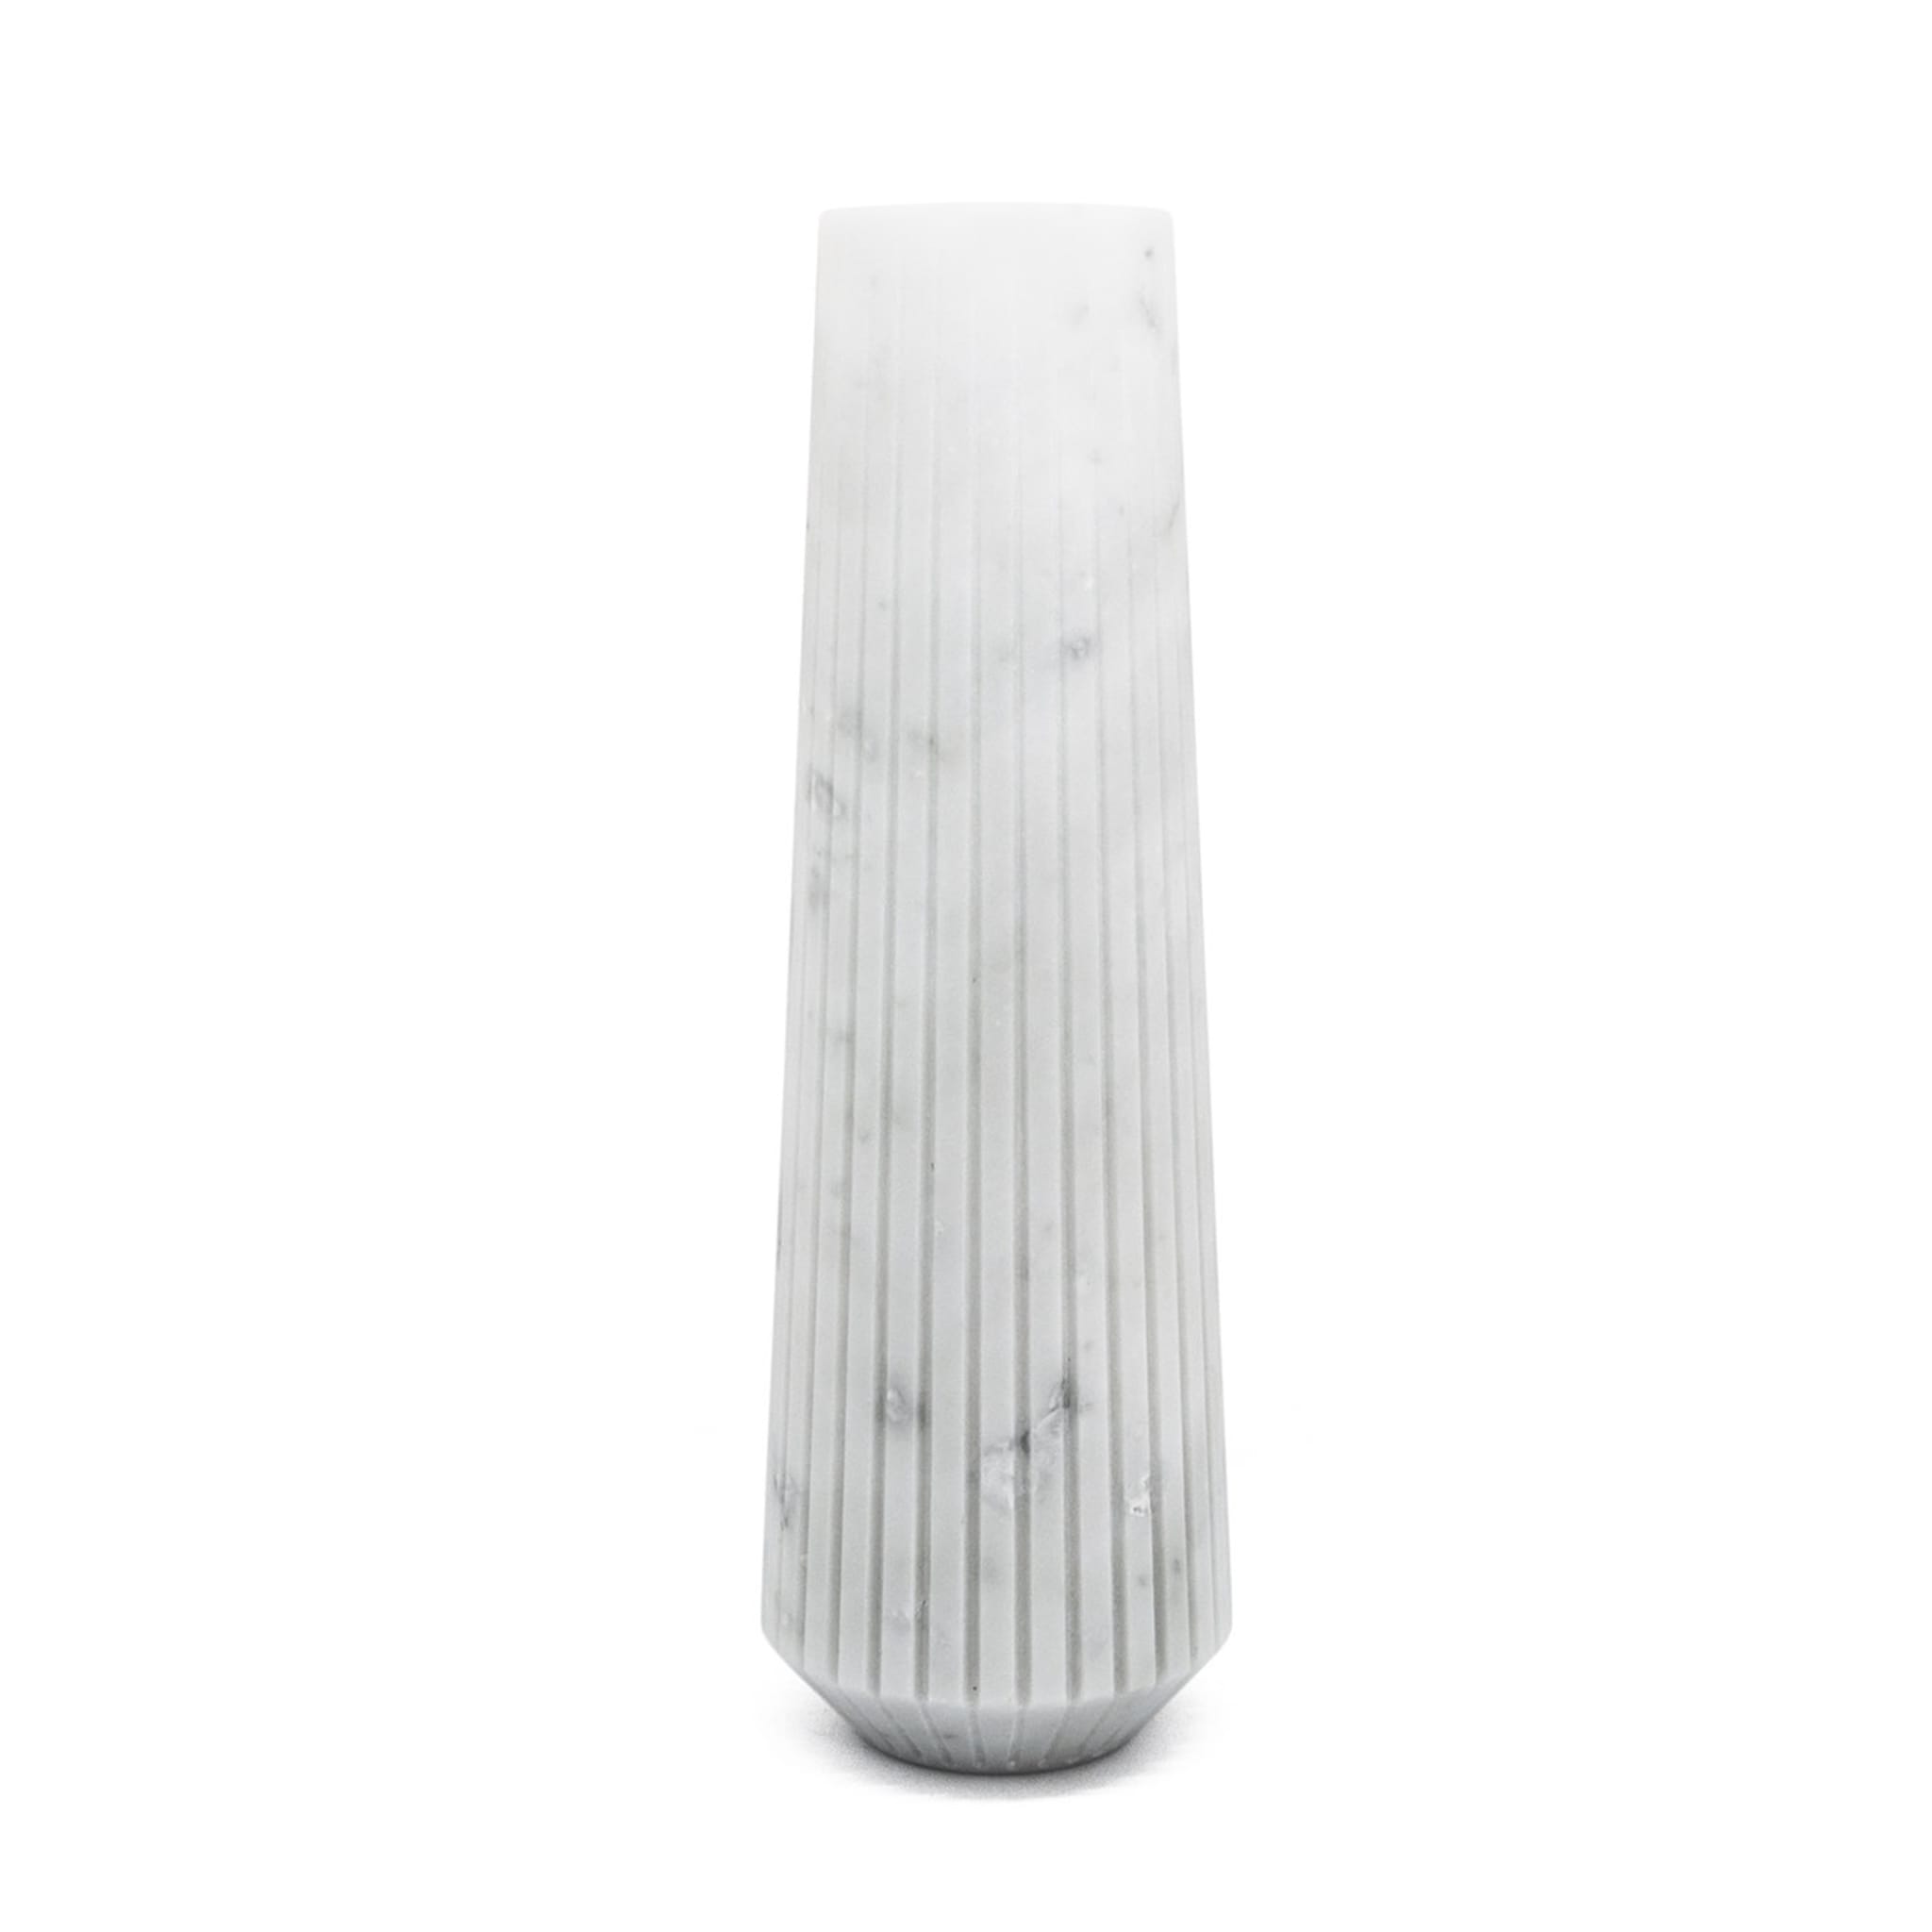 White Carrara Marble Tall Vase by Jacopo Simonetti - Alternative view 1